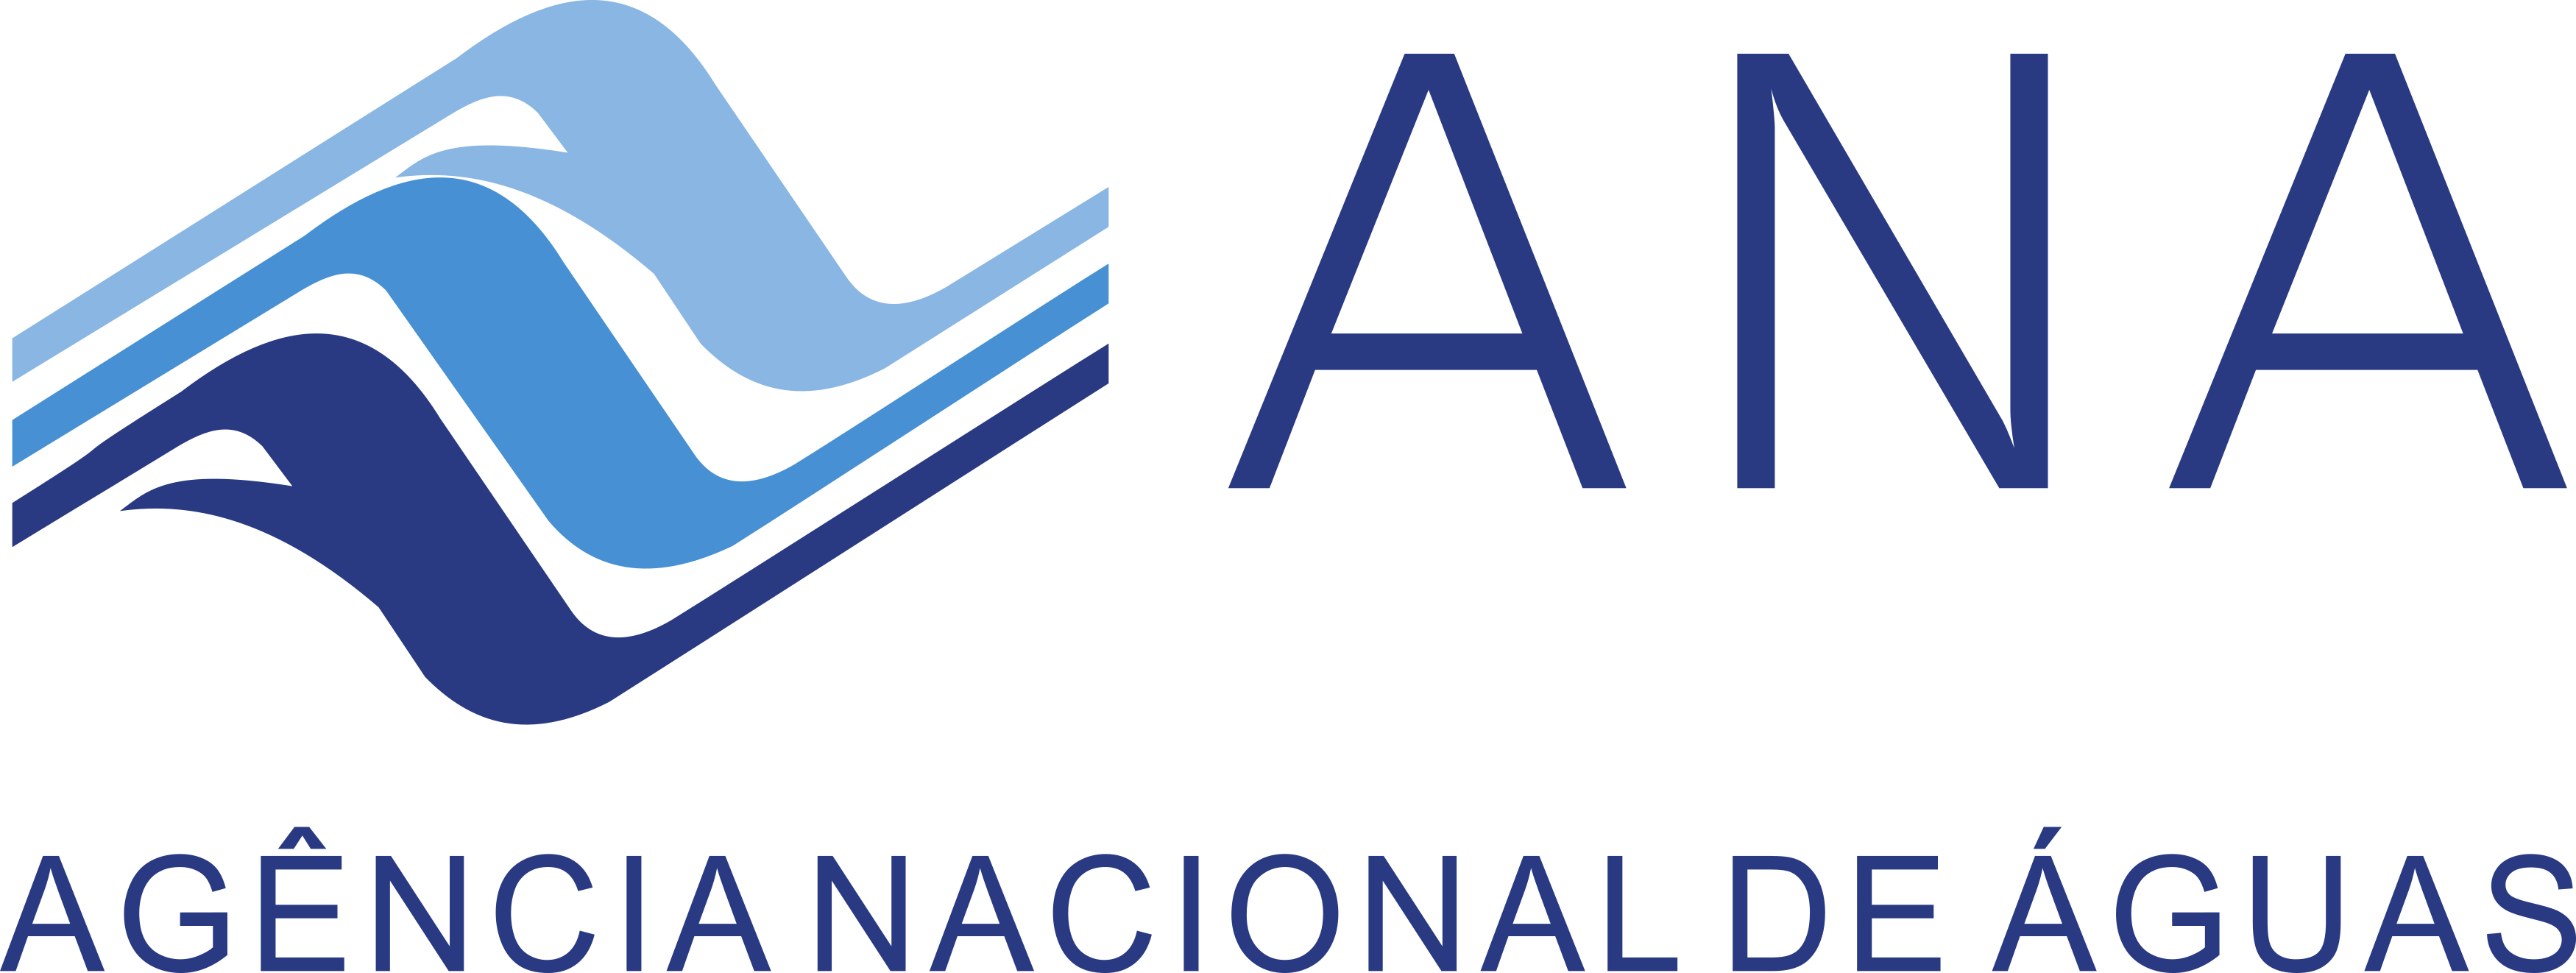 Ana Logo Agencia Nacional De Aguas Logo Png E Vetor Download De Logo